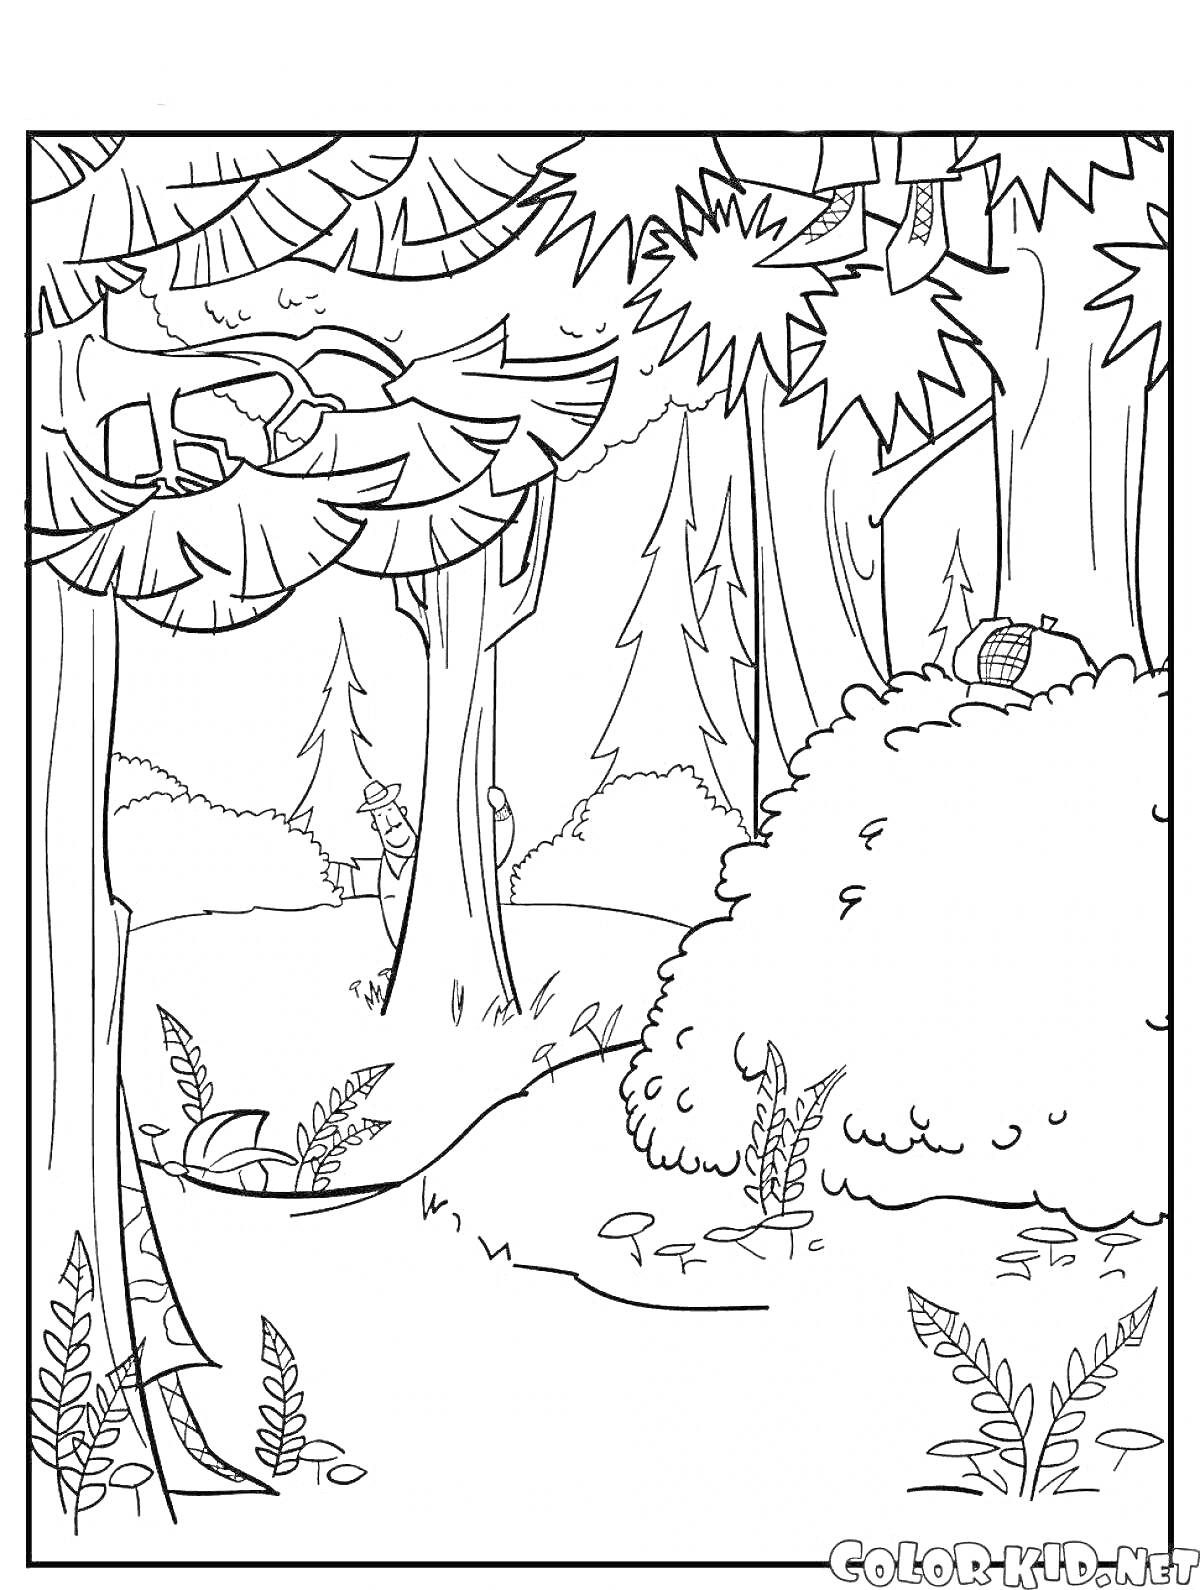 Раскраска Лес с деревьями, кустами, листьями и корзинкой